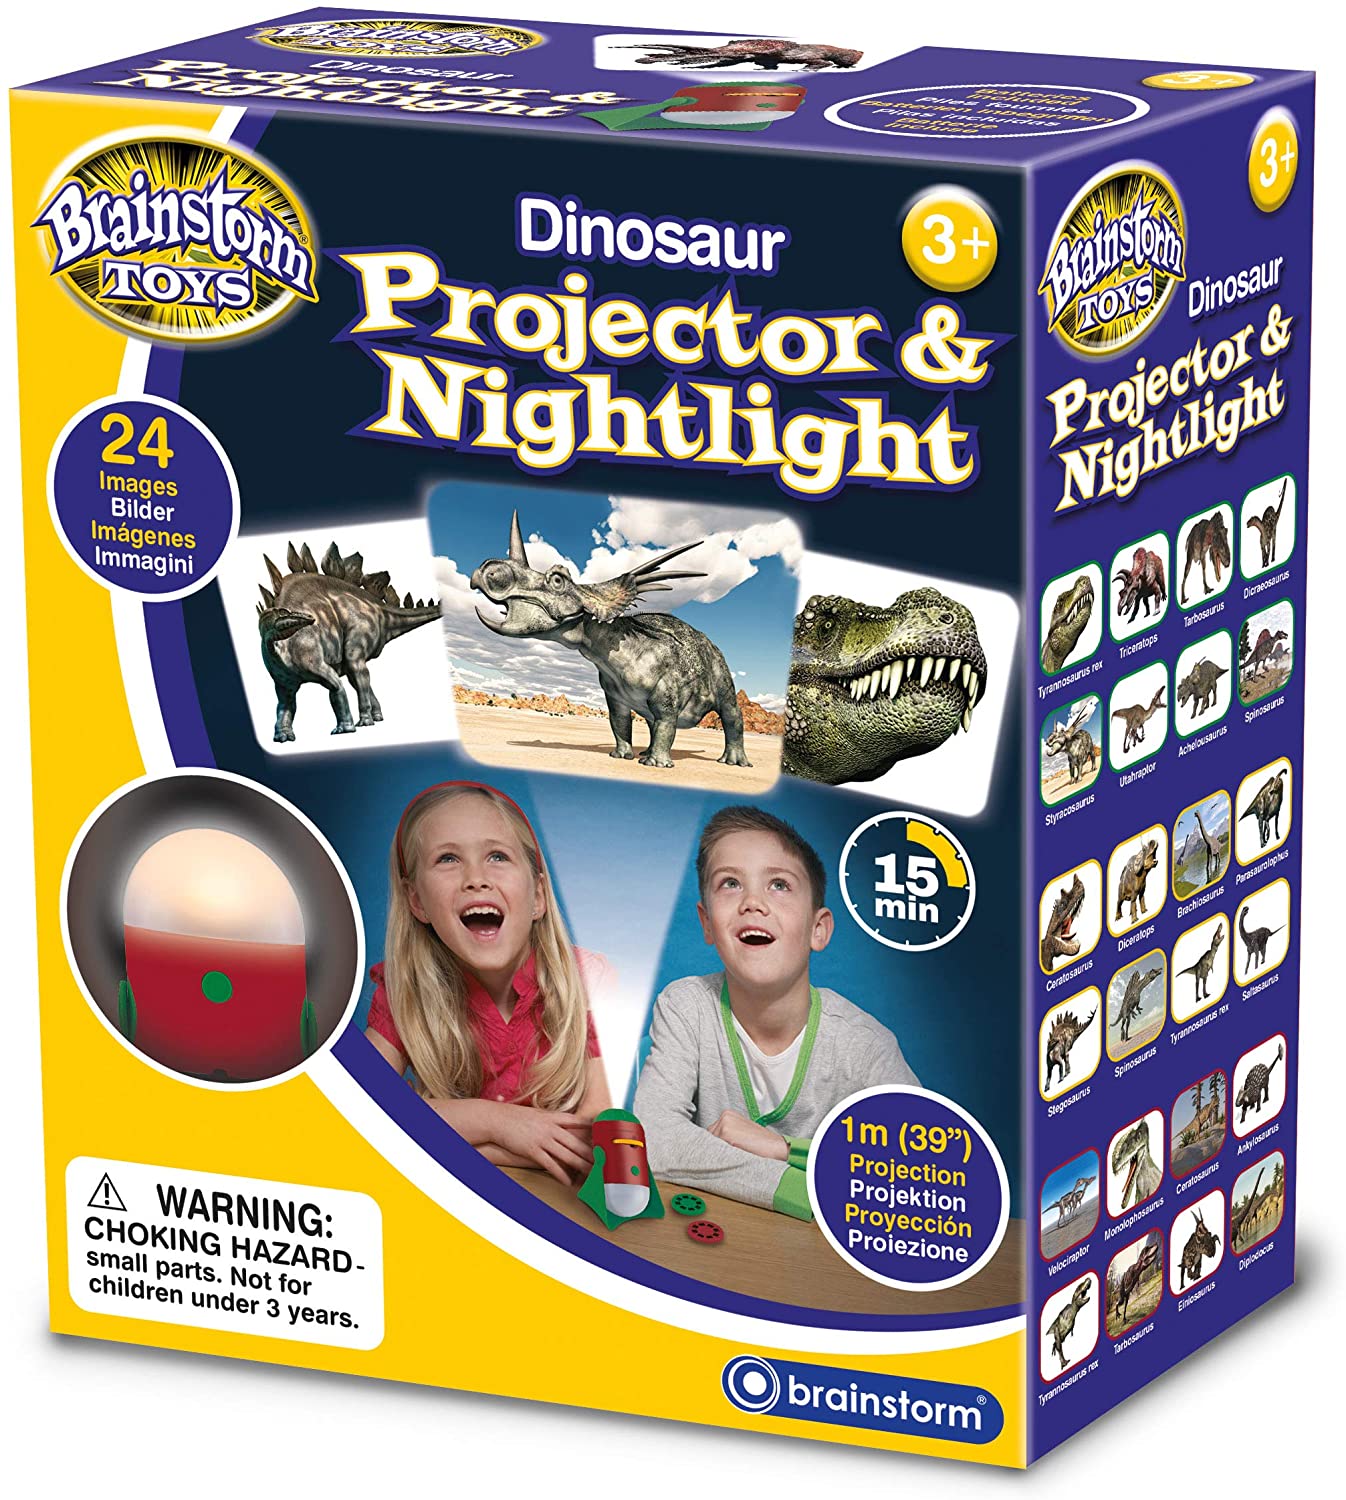 Dino Projector & Nightlight